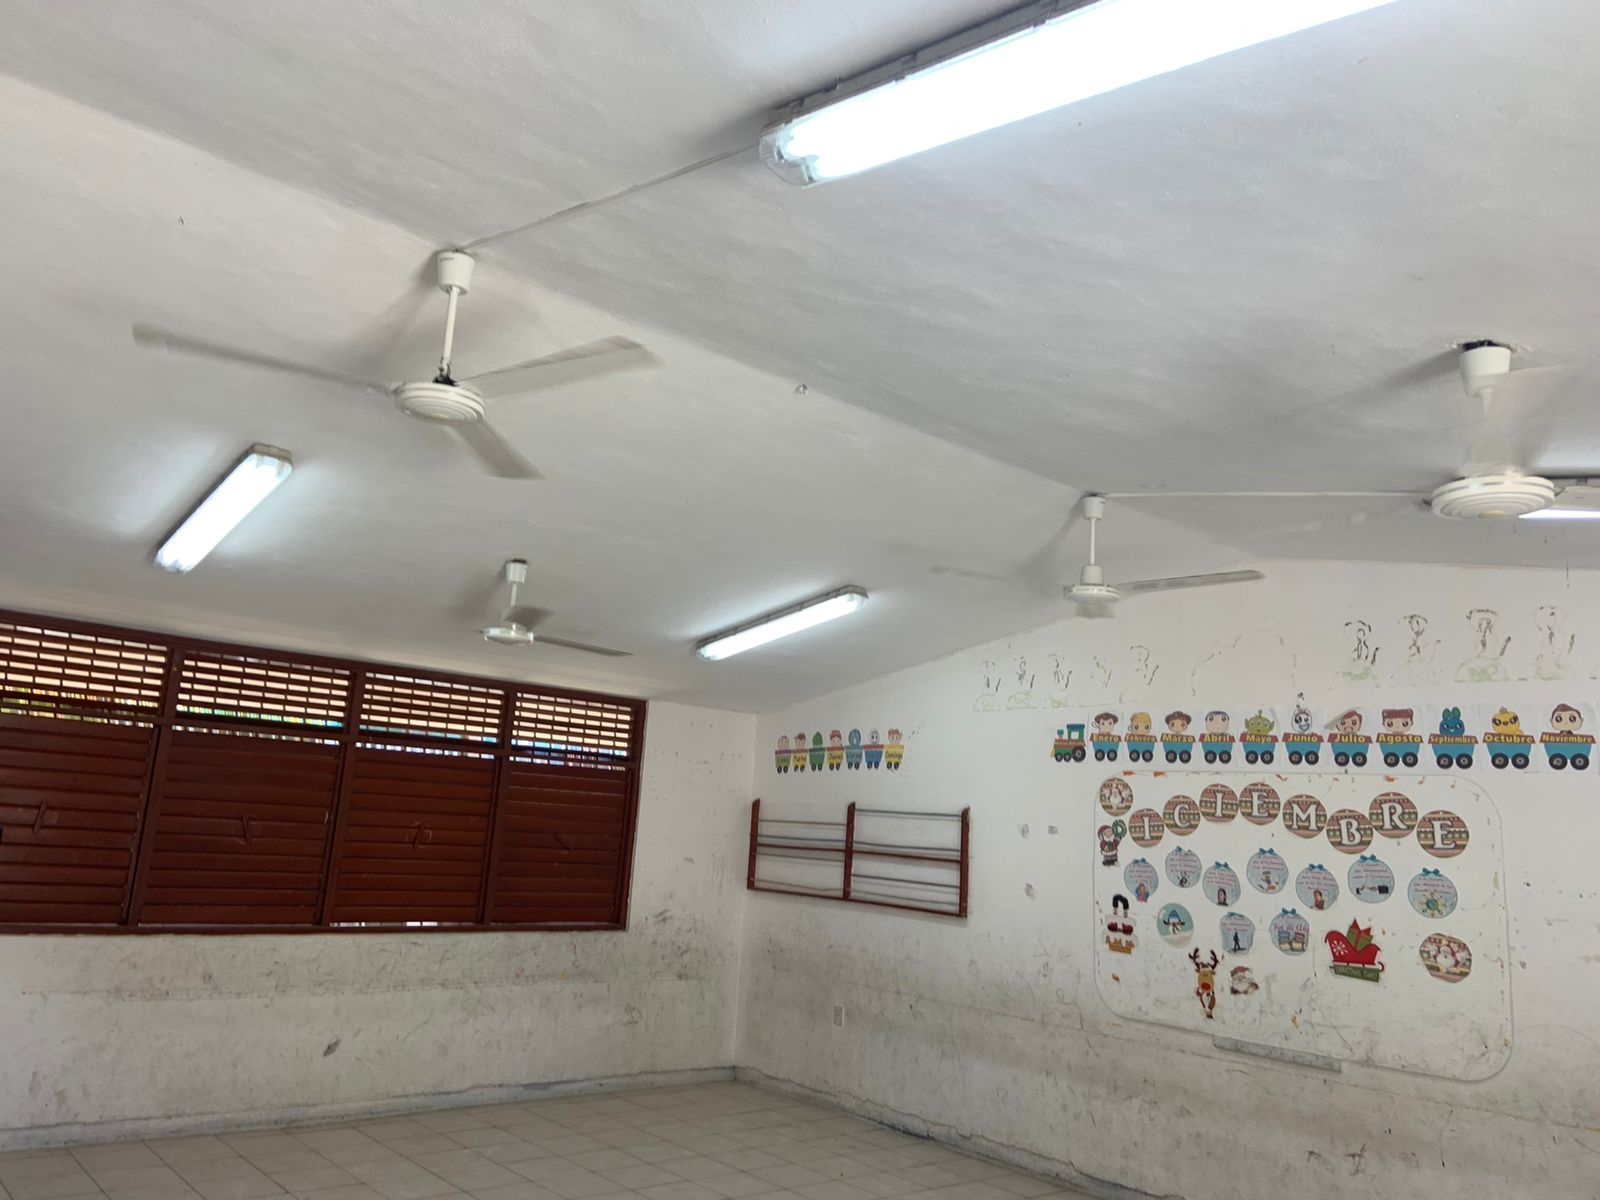 Saqueo en escuelas de Quintana Roo, atribuido a banda delictiva